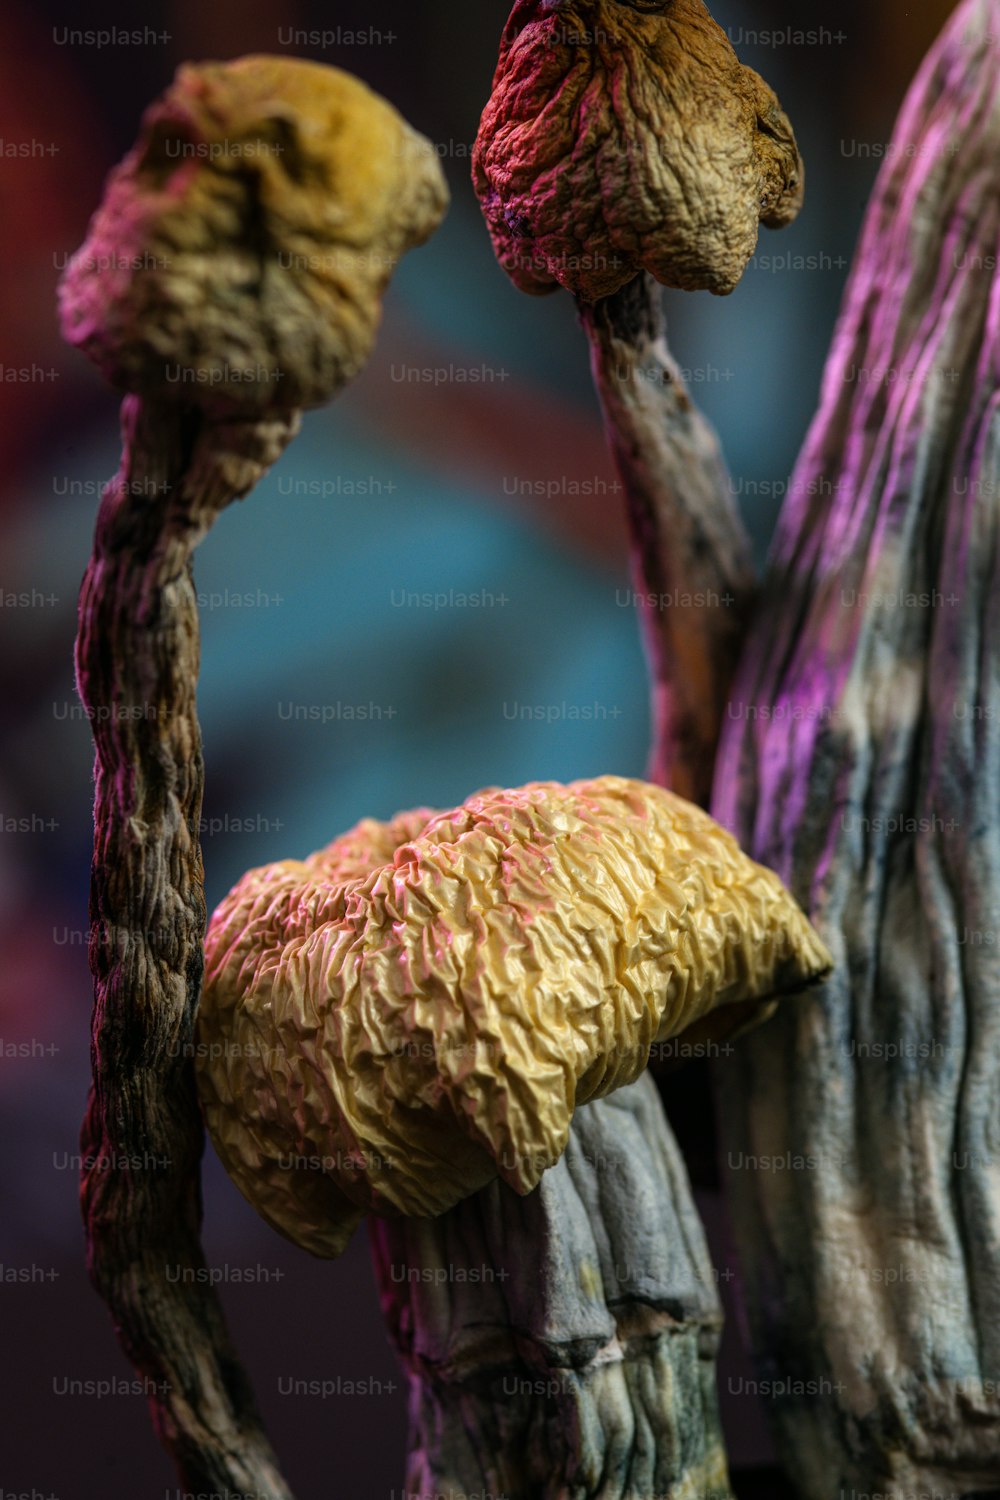 um close up de um cogumelo em uma árvore